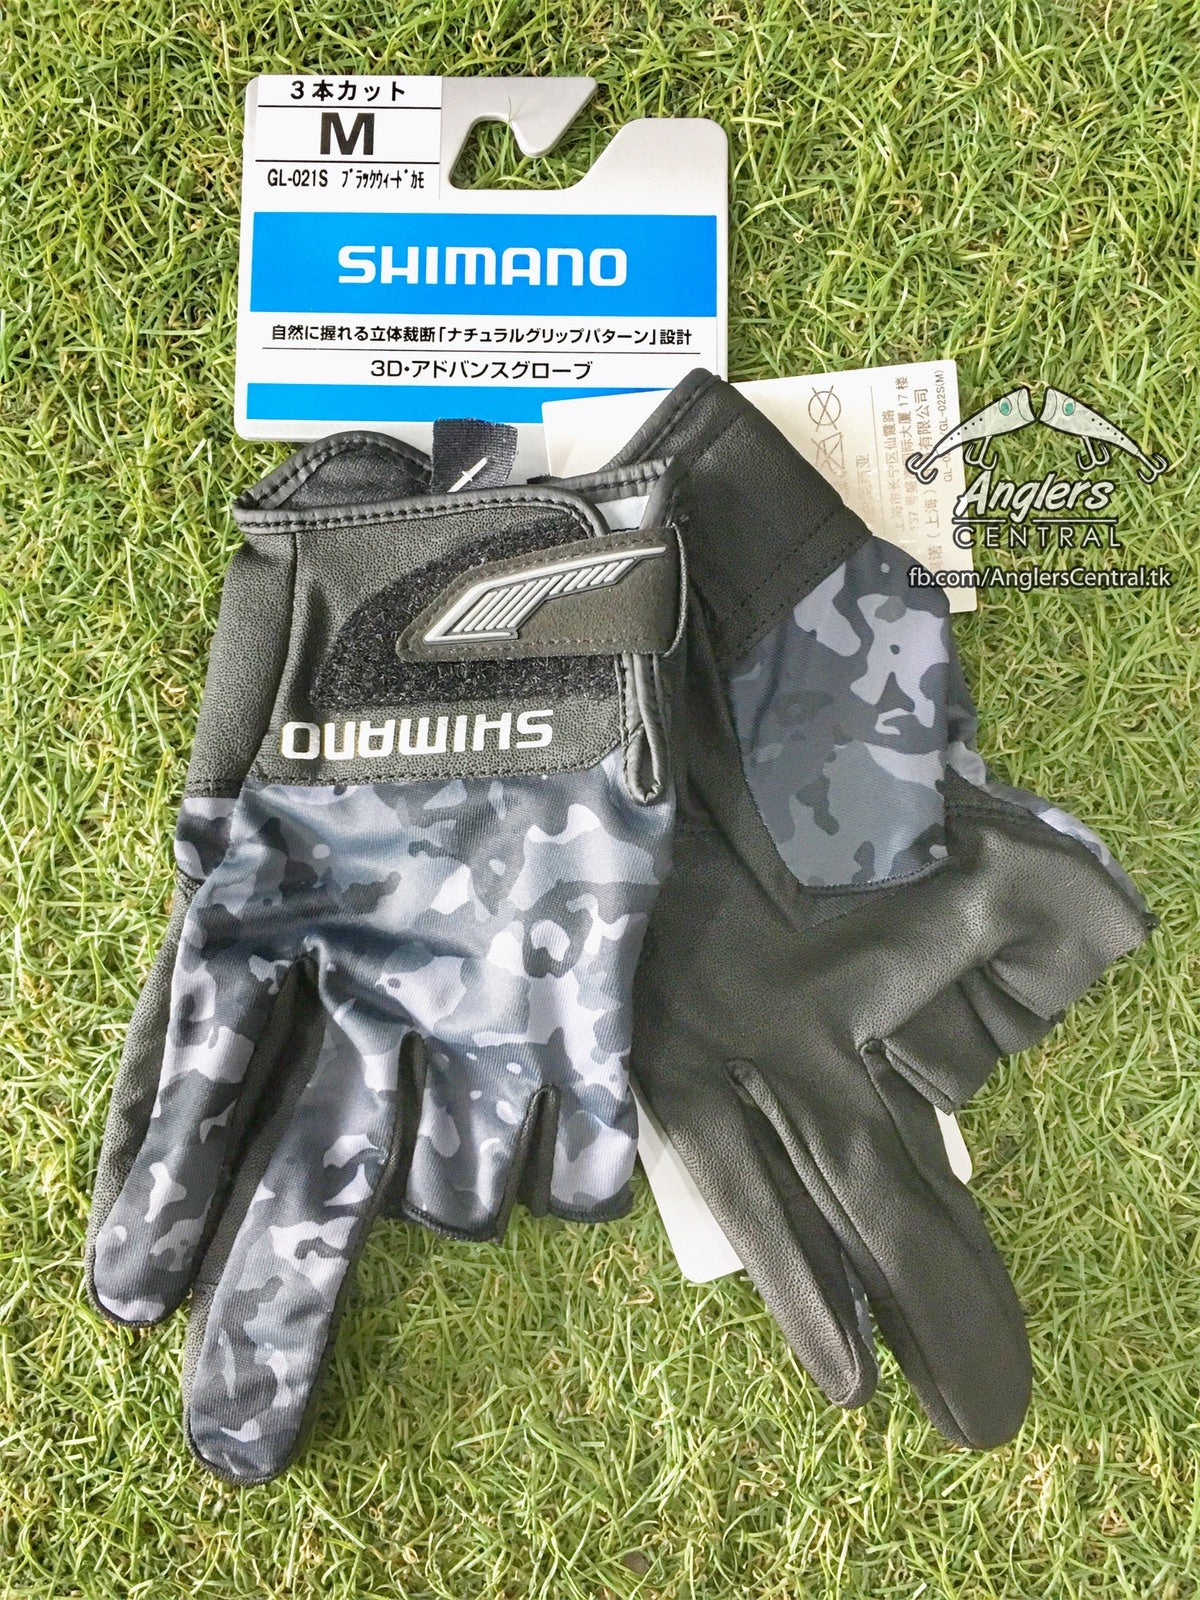 GL-021S 3D Advance Glove